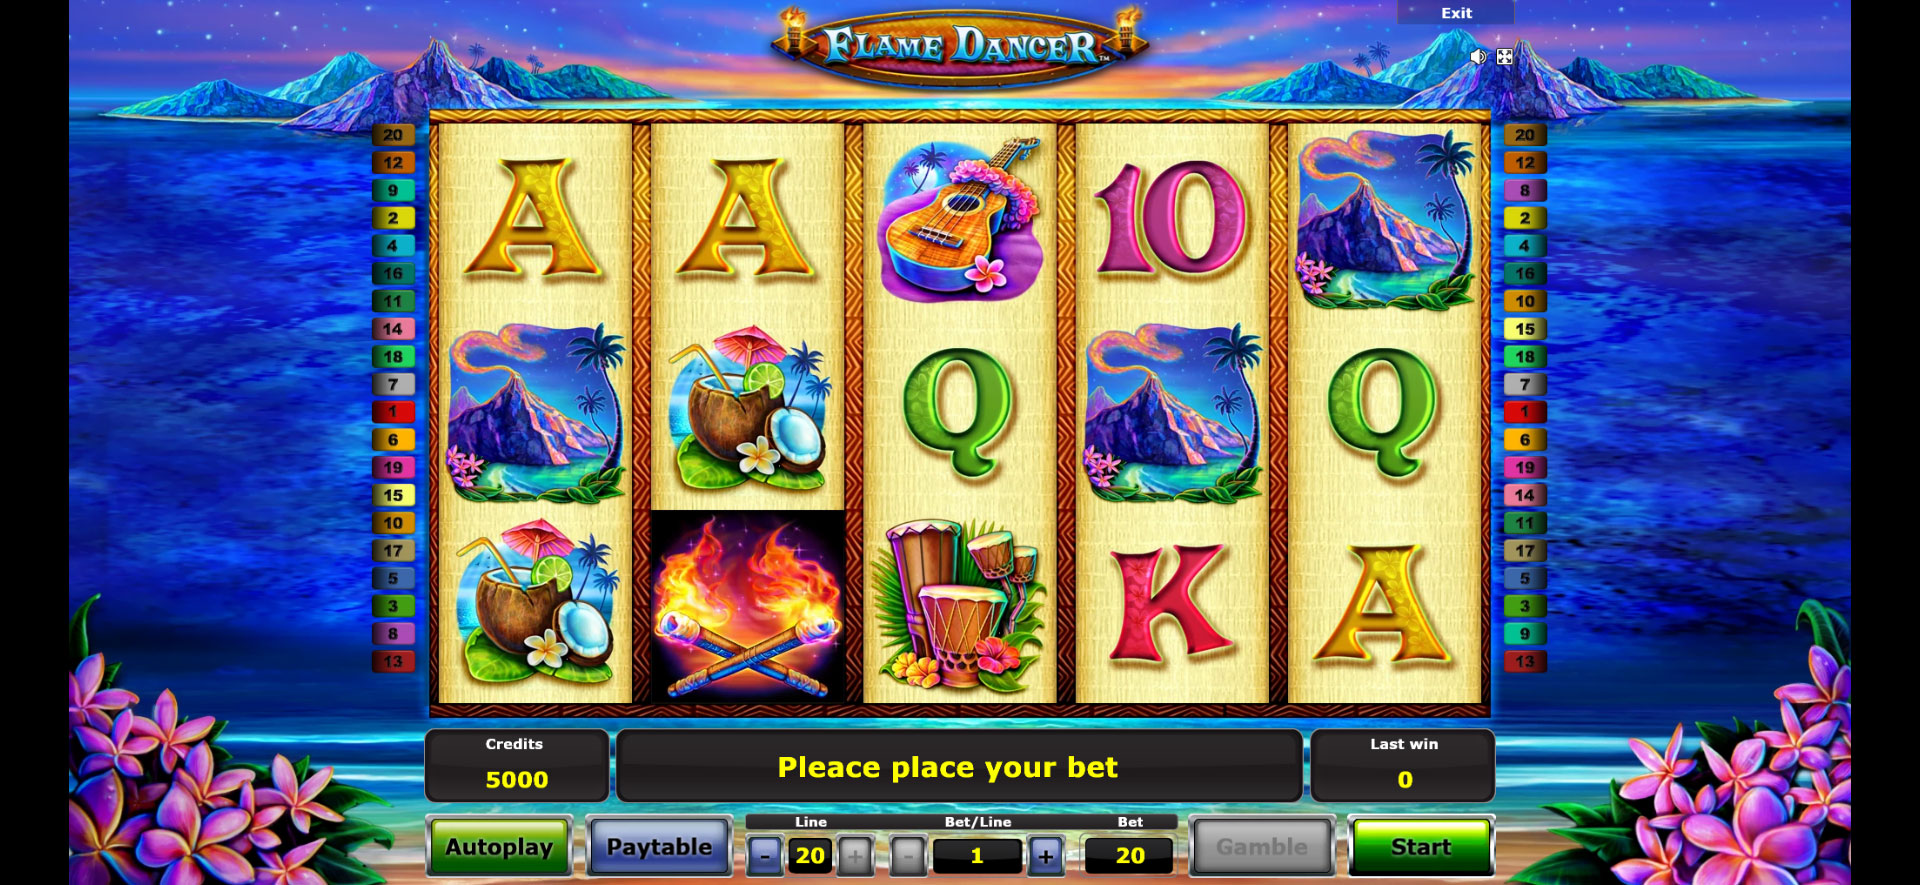 schermata di gioco della slot machine flame dancer